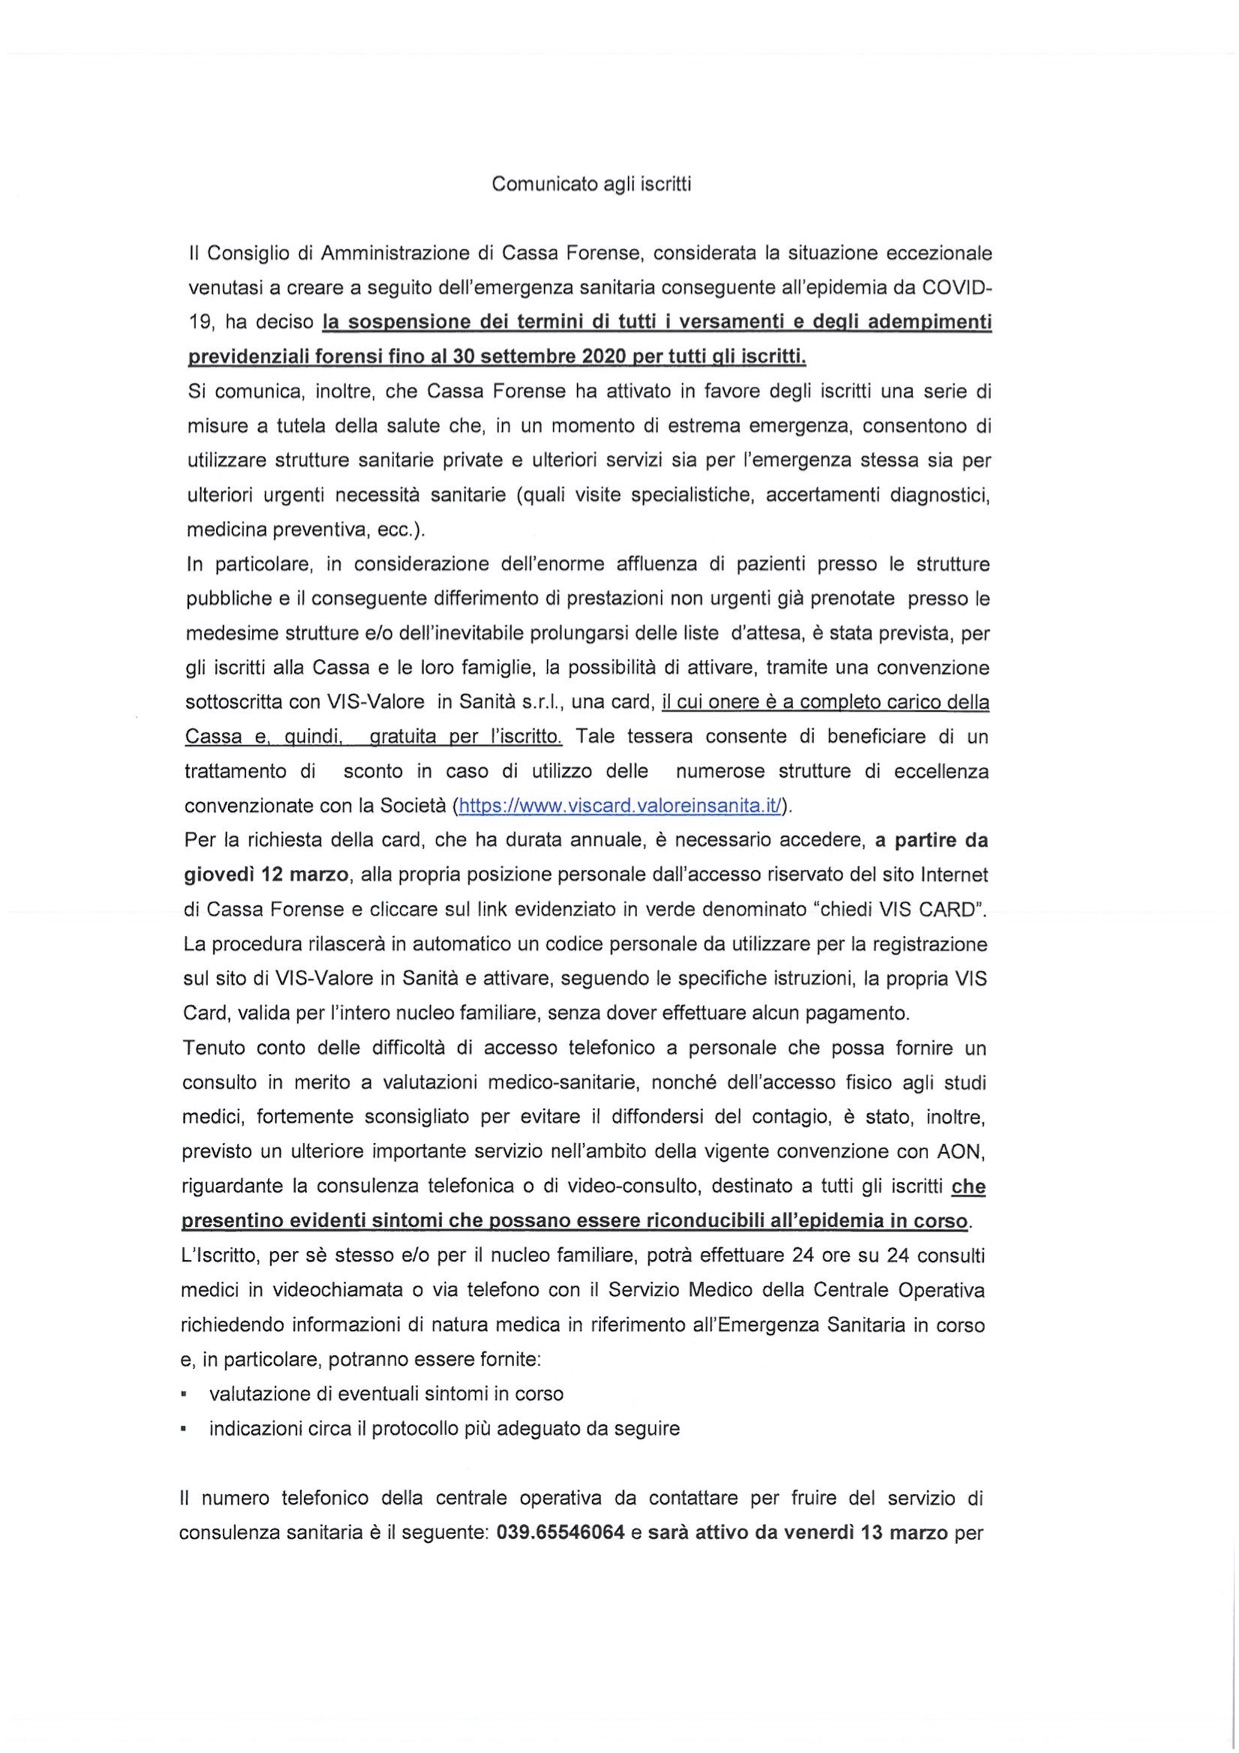 Comunicato agli iscritti Cassaforense 11.03.2020